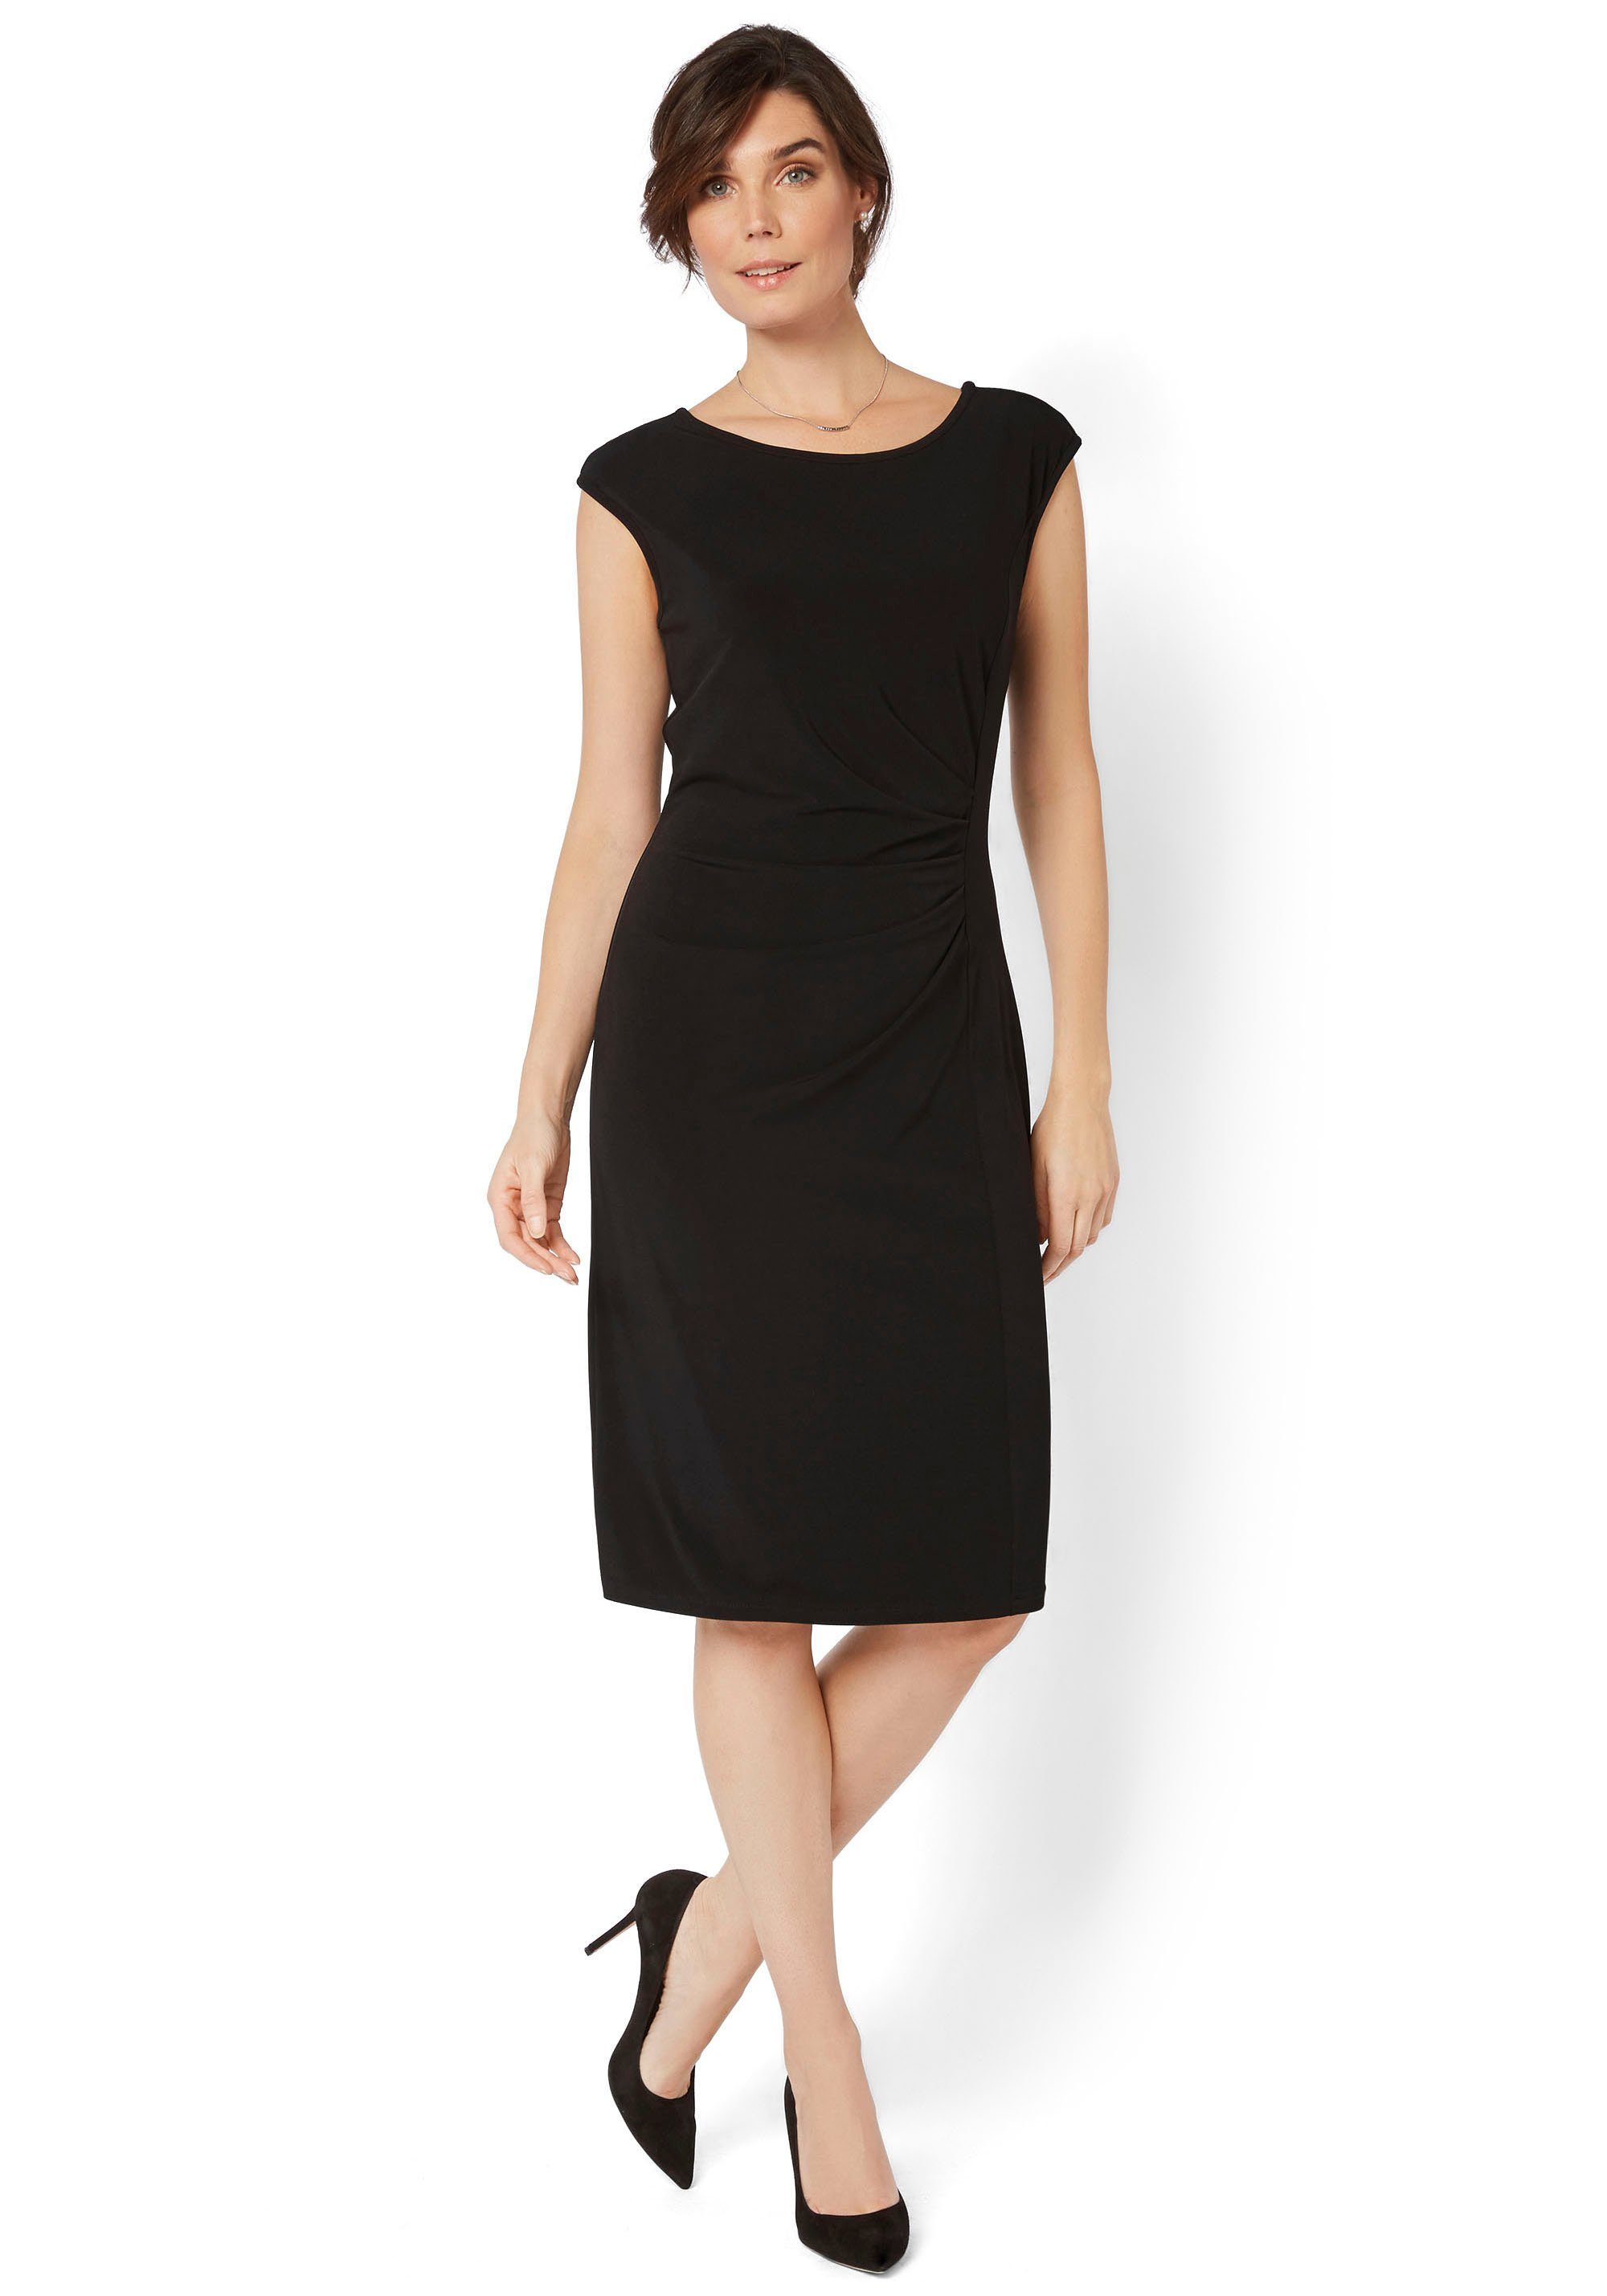 HERMANN LANGE Collection Jerseykleid mit eleganter Raffung schwarz | Jerseykleider